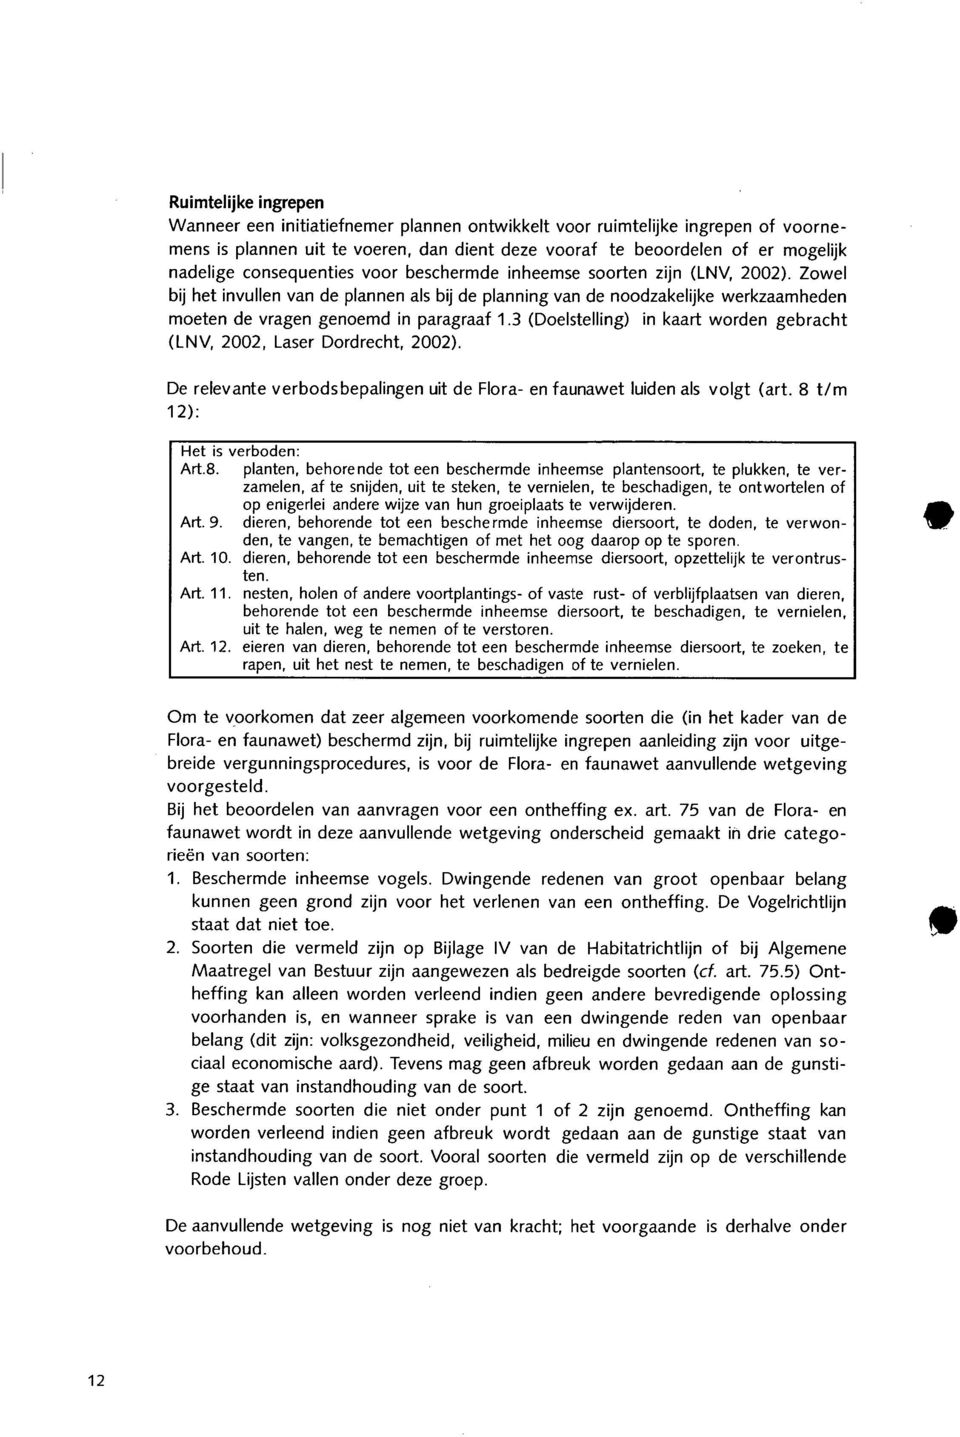 3 (Doelstelling) (LNV, 2002, Laser Dordrecht, 2002). in kaart worden gebracht De relevante verbodsbepalingen uit de Flora- en faunawet luiden als volgt (art. 8 t/m 12): Het is verboden: Art.B.